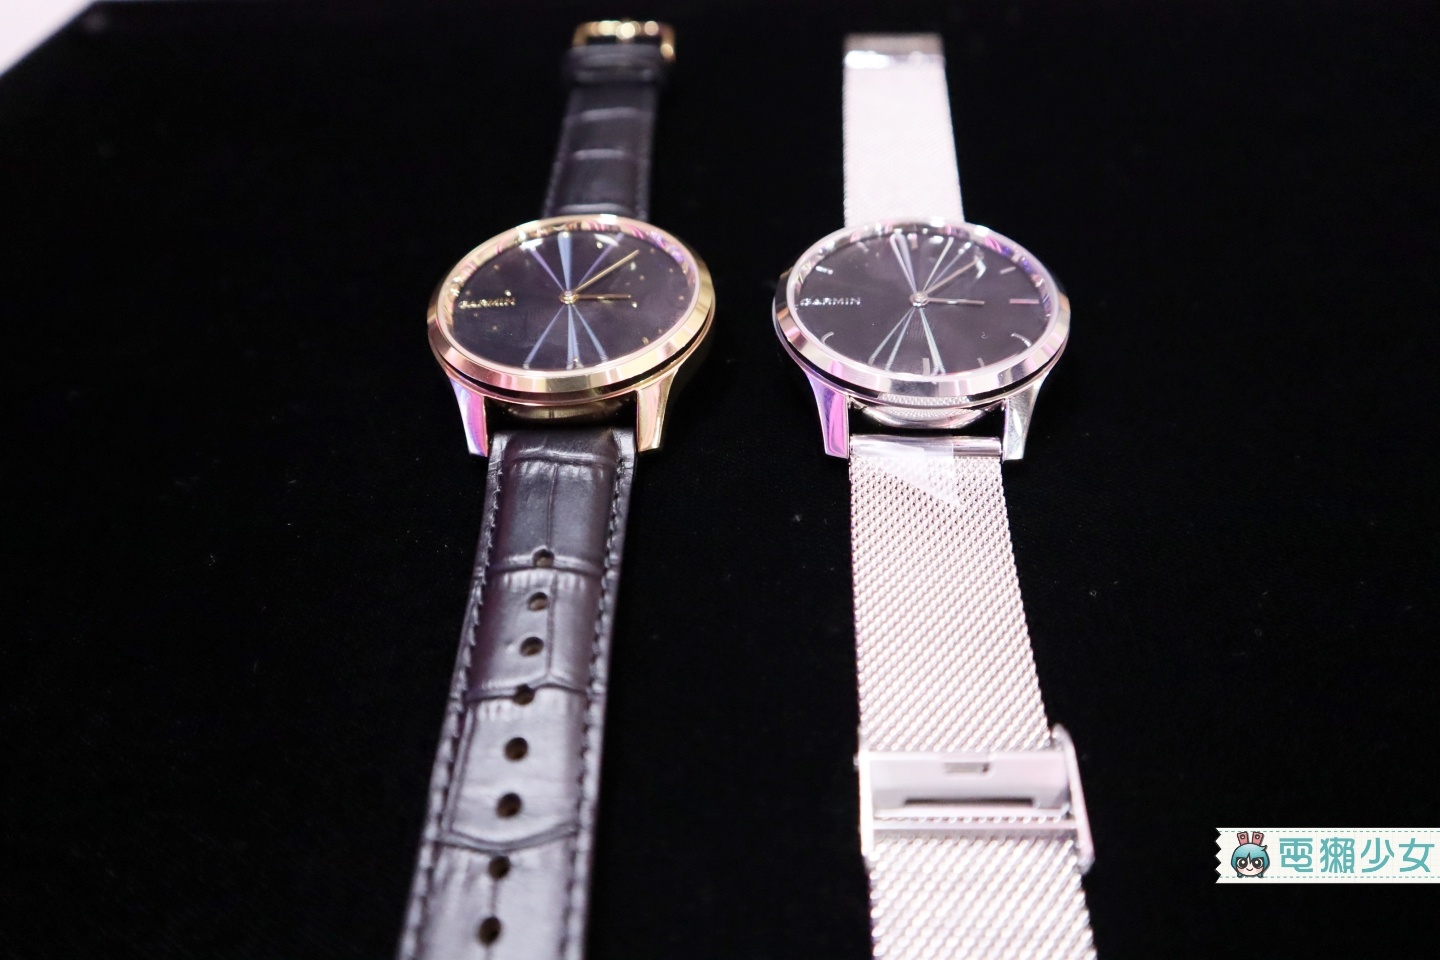 Garmin 新系列敲敲錶『 Vivomove系列 』、『 Venu 』，可行動支付、紀錄經期的美型智慧手錶